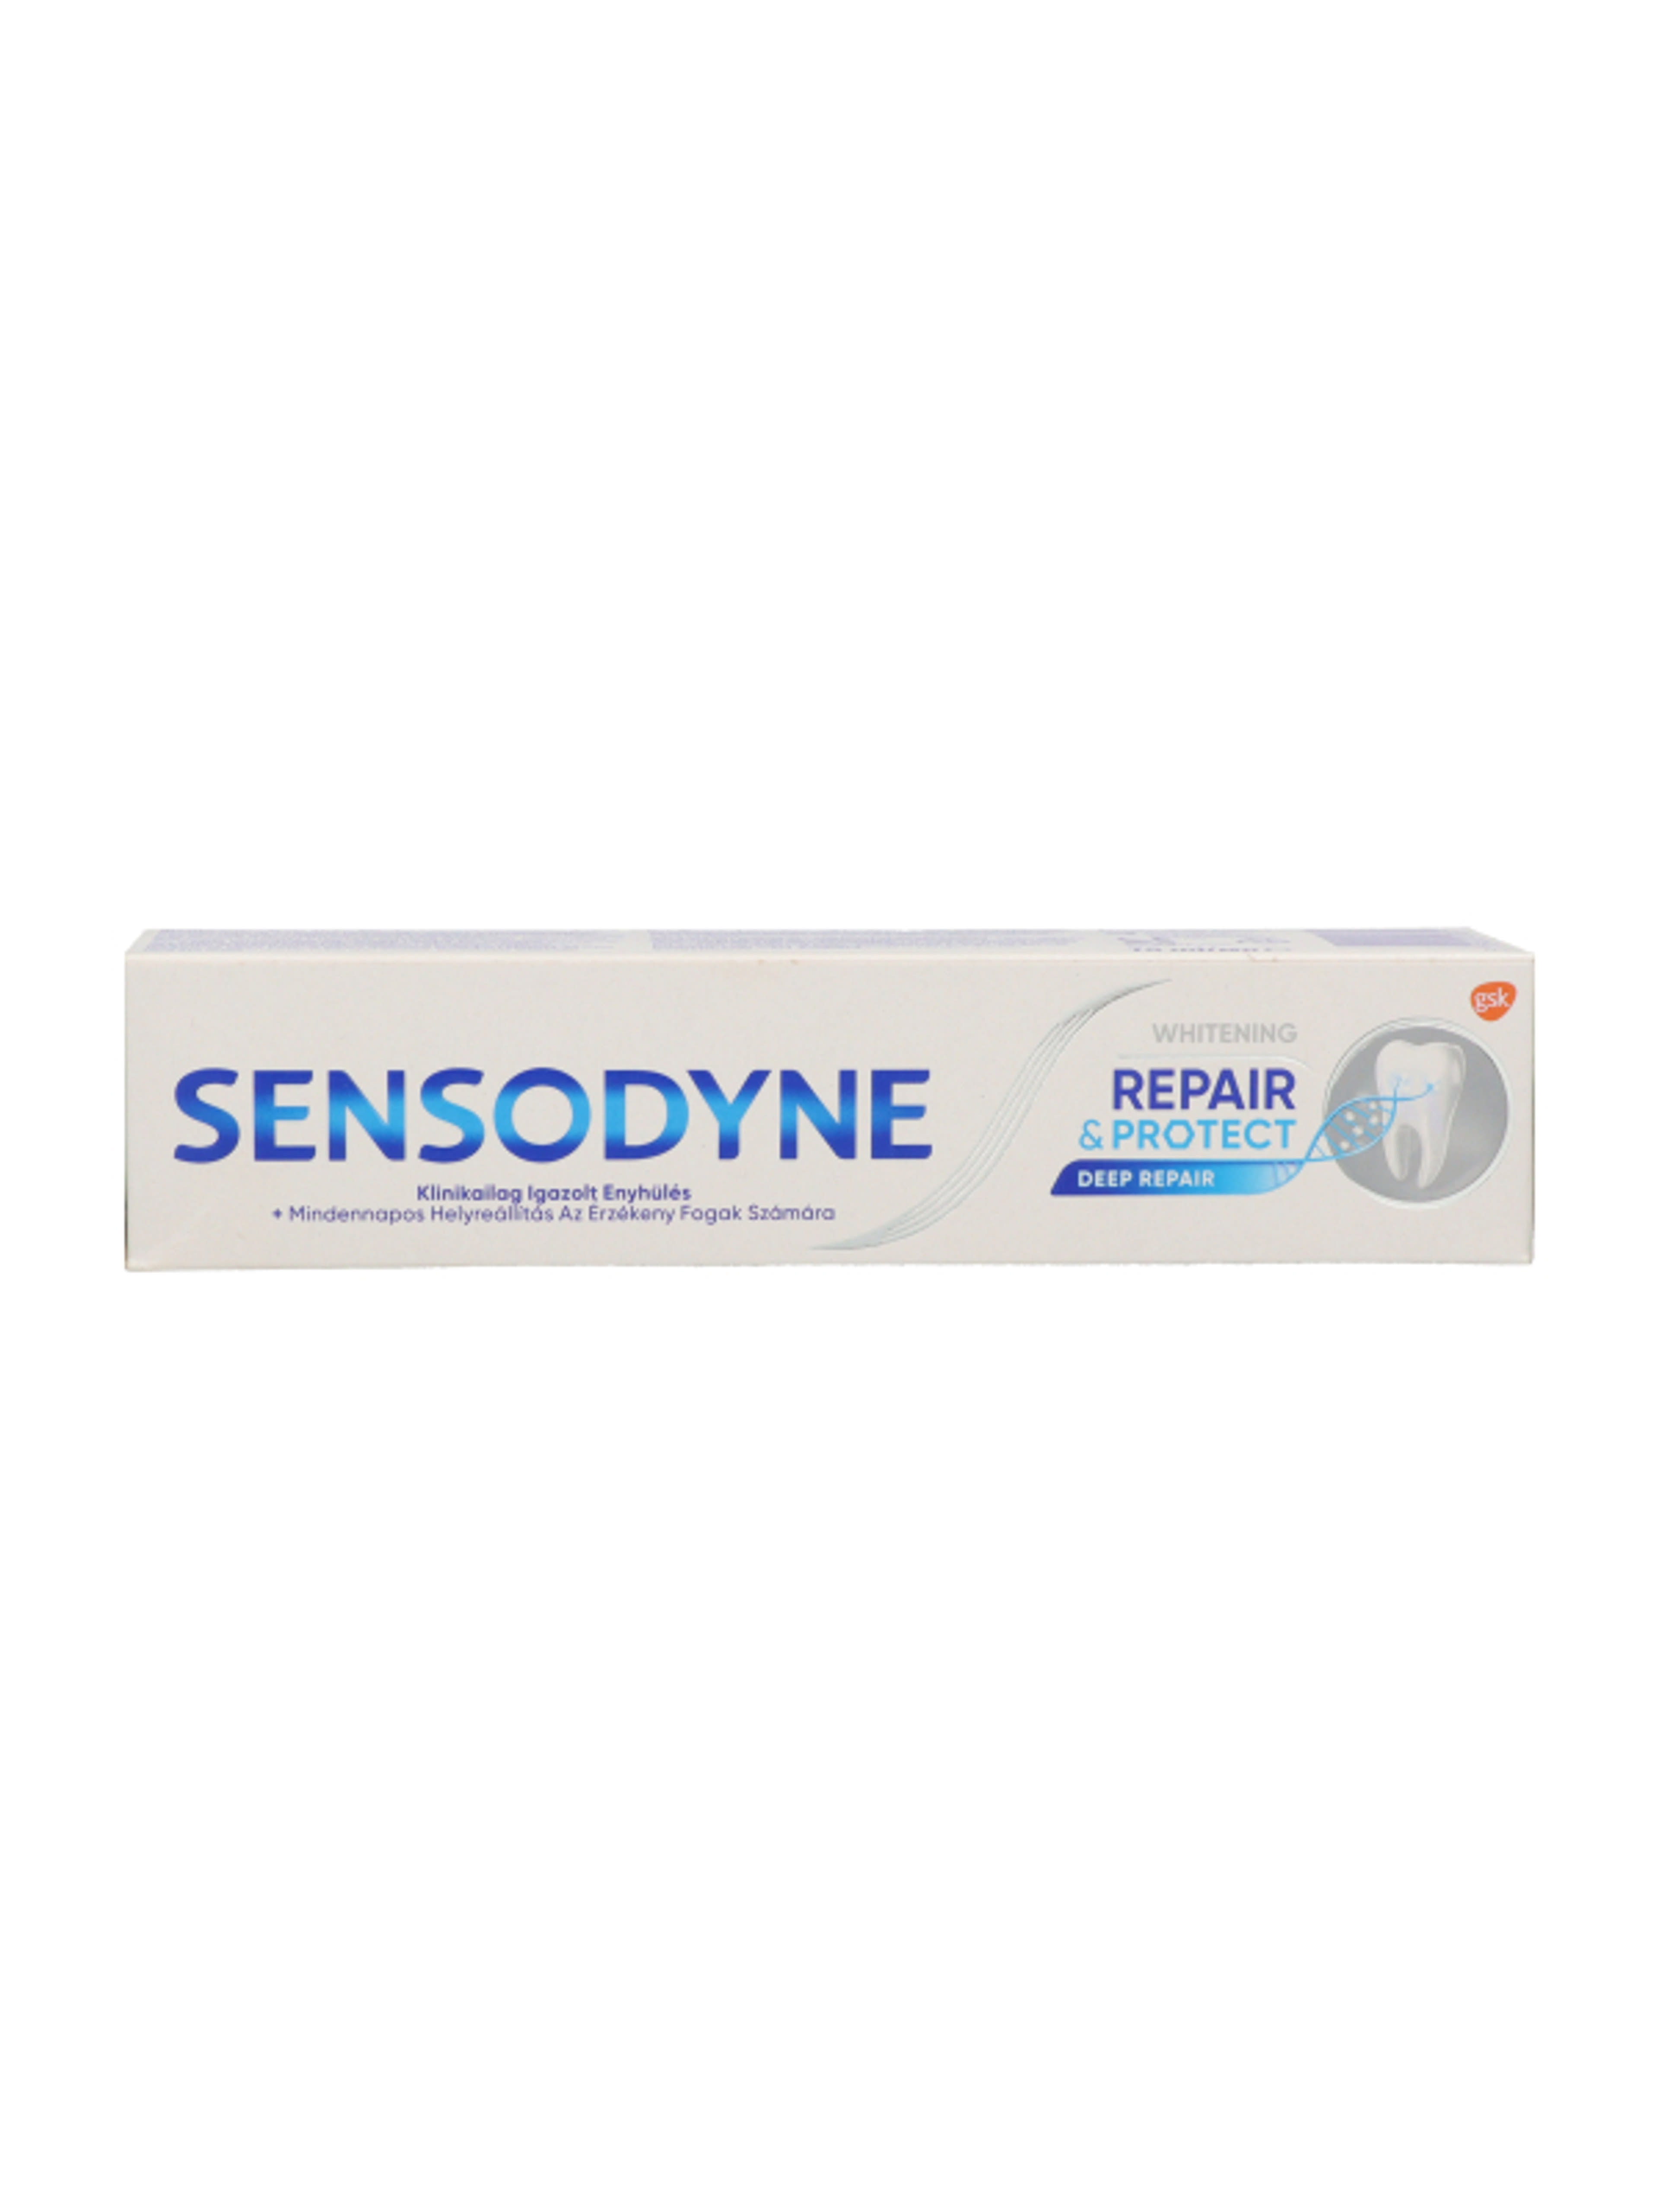 Sensodyne Repair & Protect Whitening fogkrém - 75 ml-7